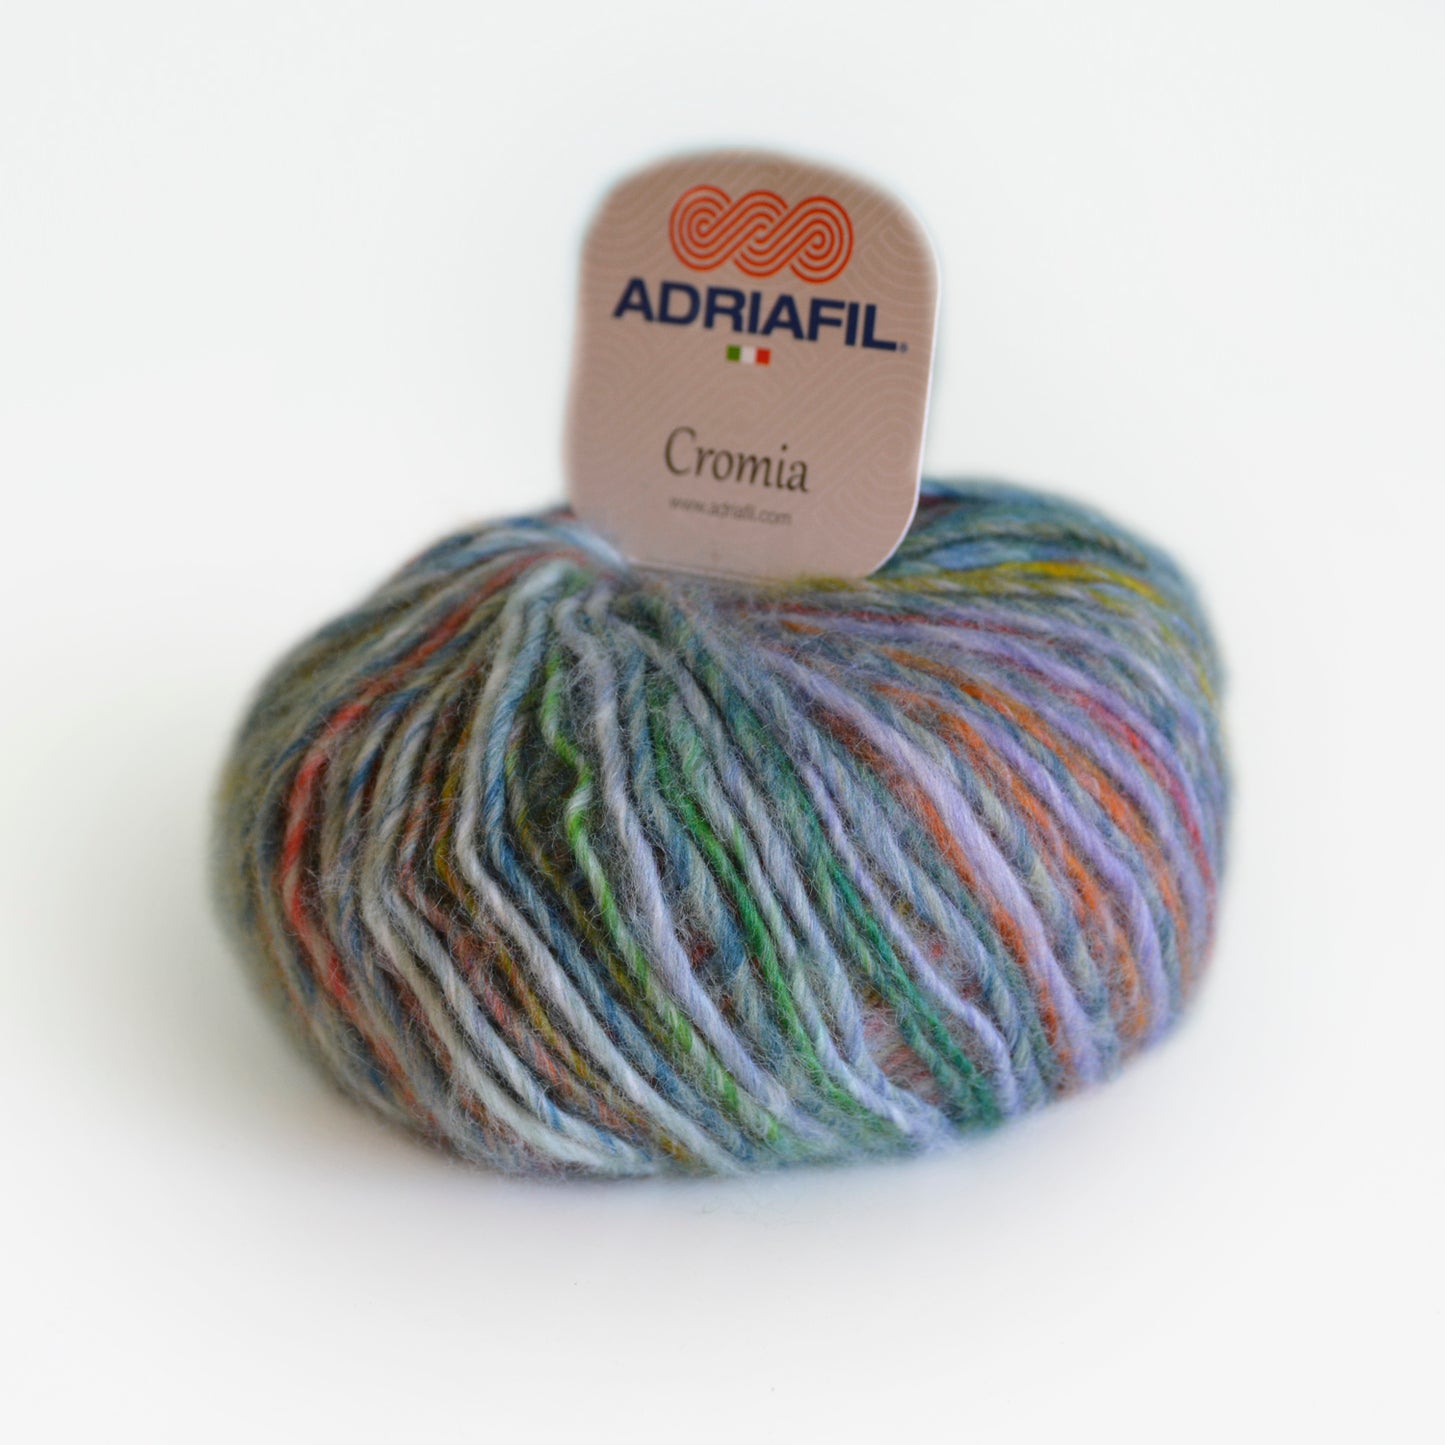 ADRIAFIL Cromia